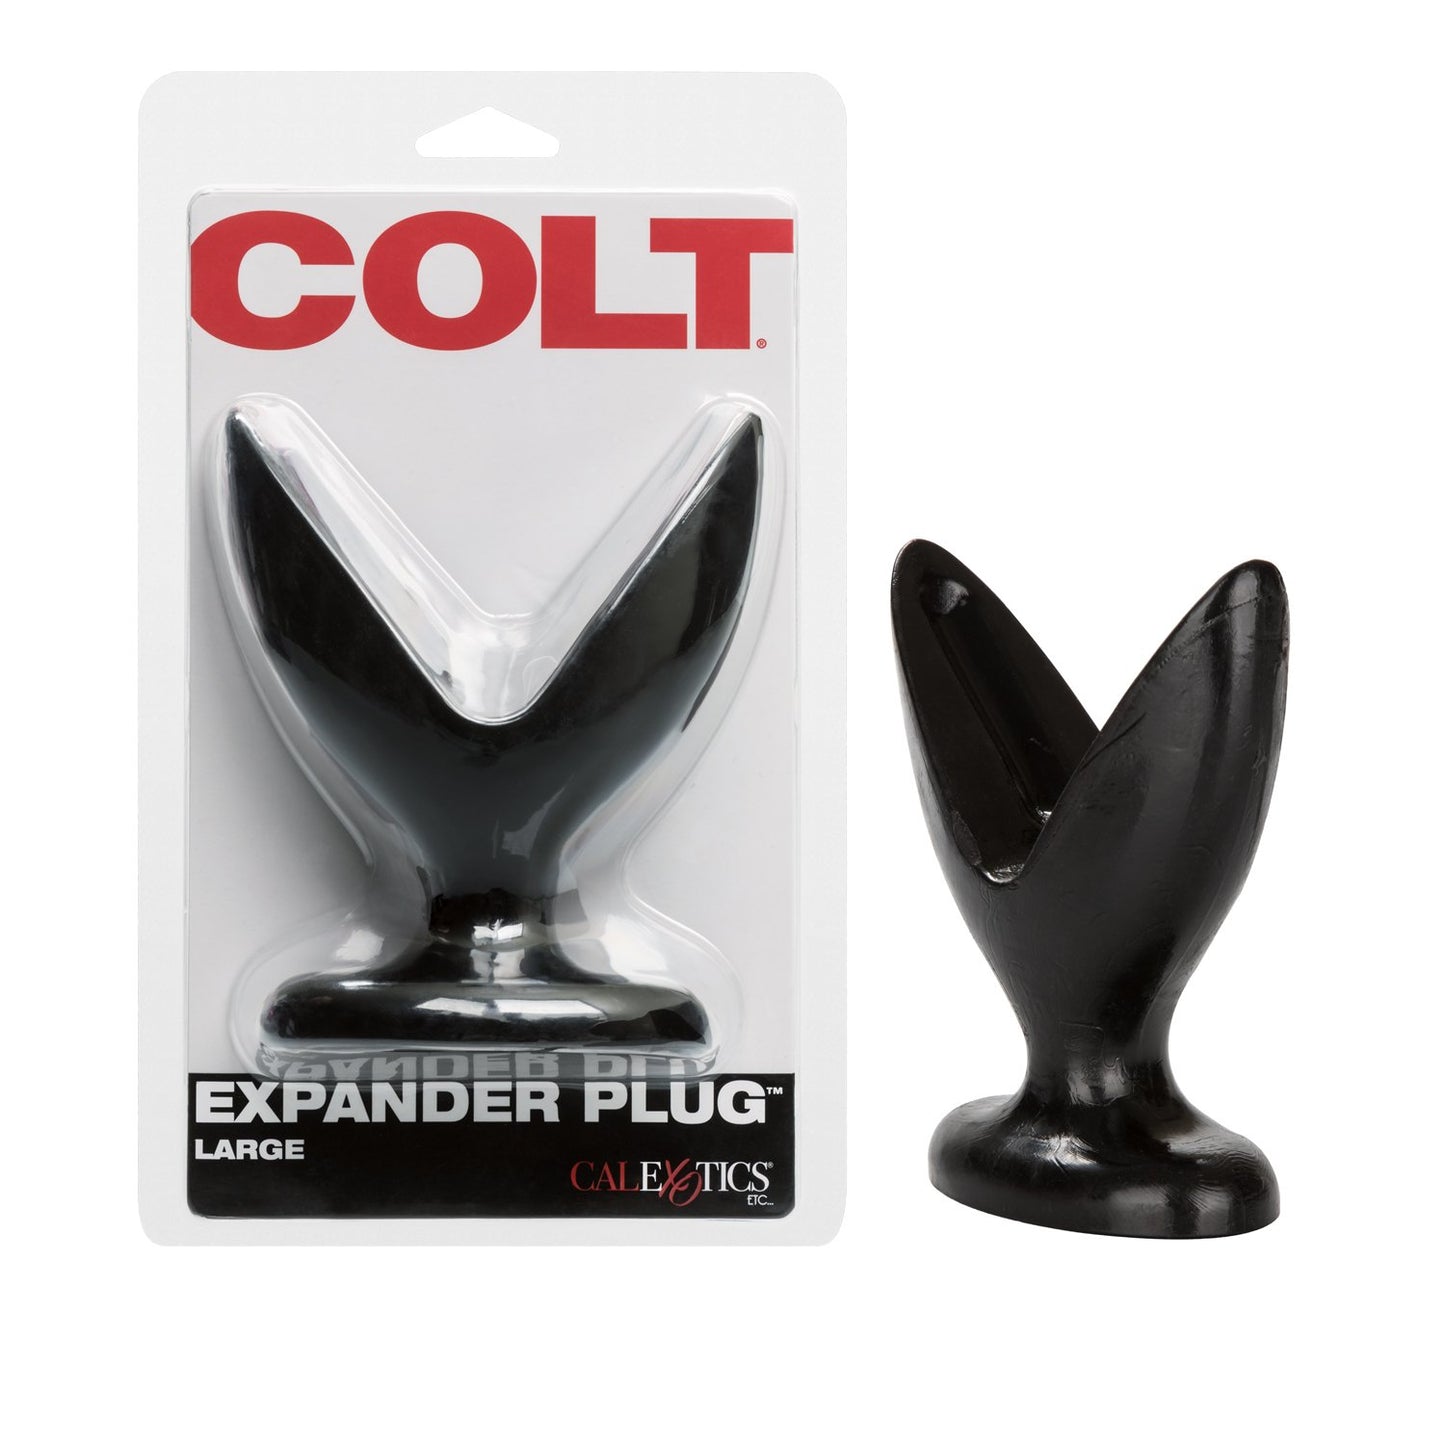 COLT Expander Plug - Large